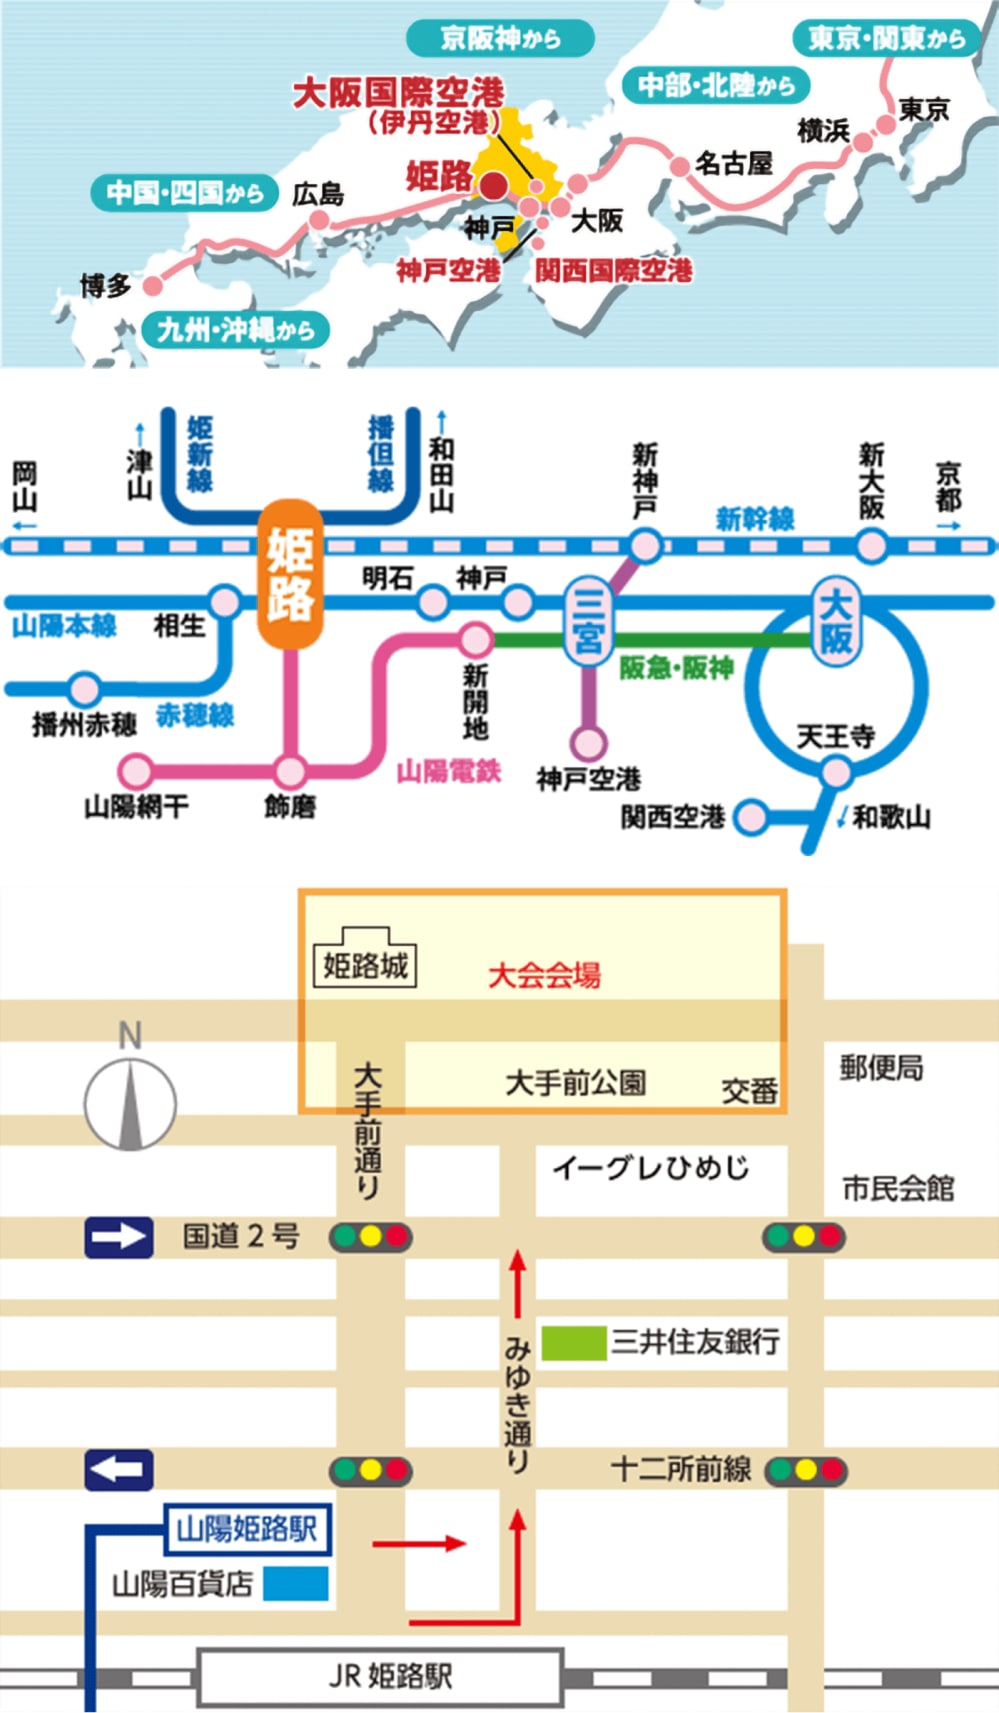 姫路城マラソン会場までのアクセス図